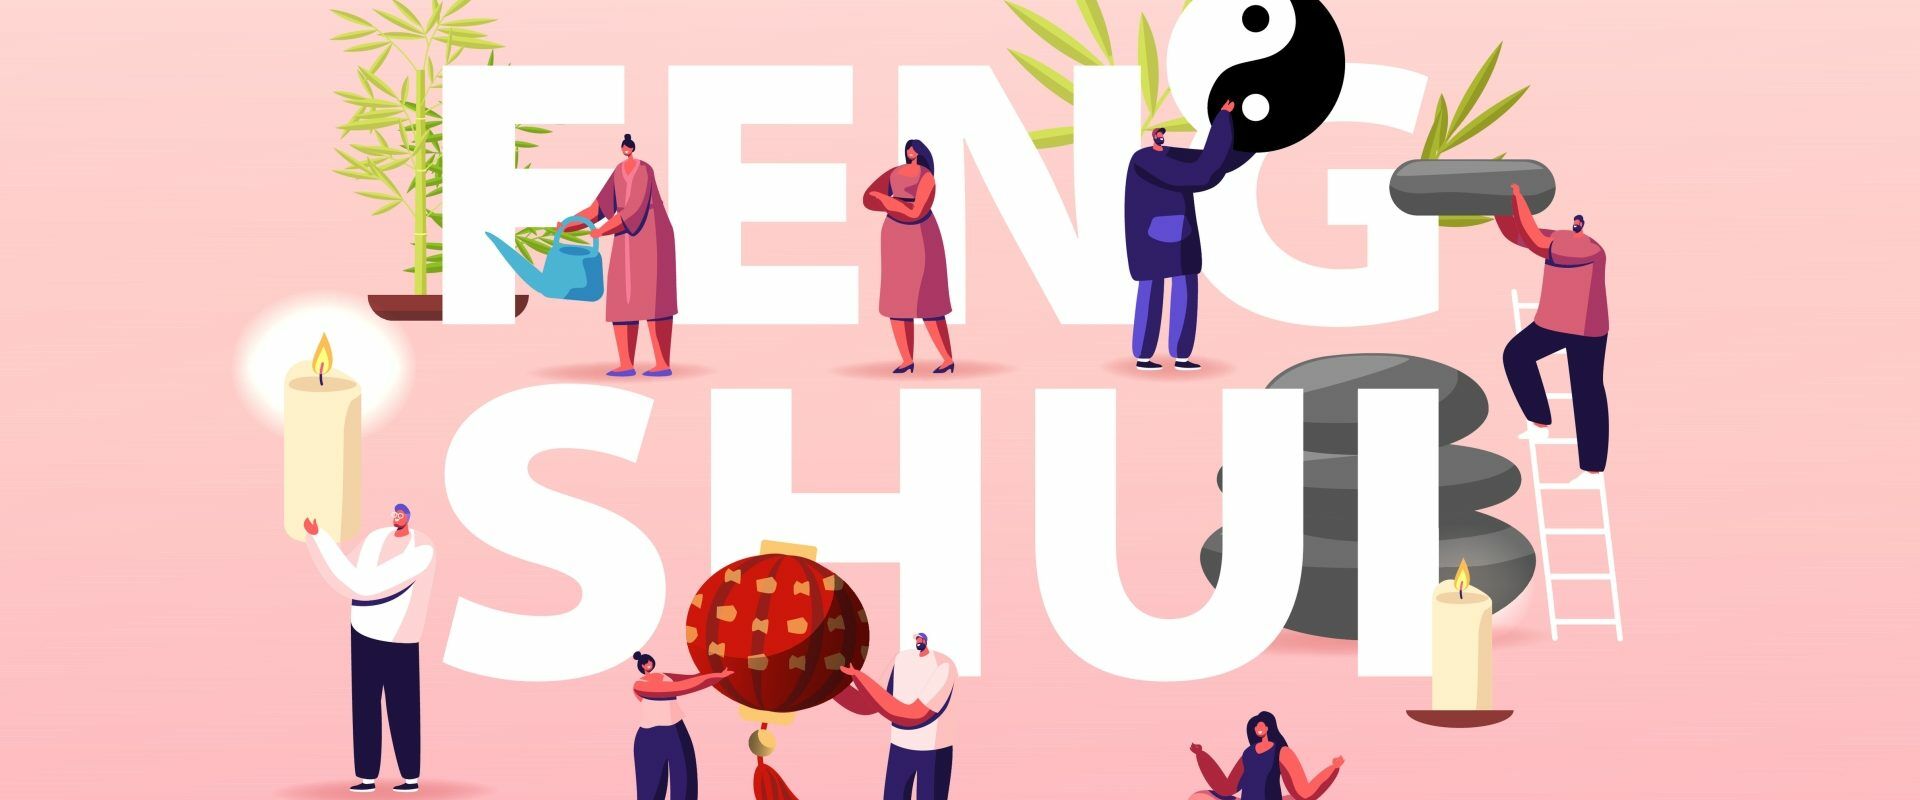 Jak urządzić dom według zasad feng shui? Ilustracja z napisem feng shui i różnymi postaciami i przedmiotami domowymi.